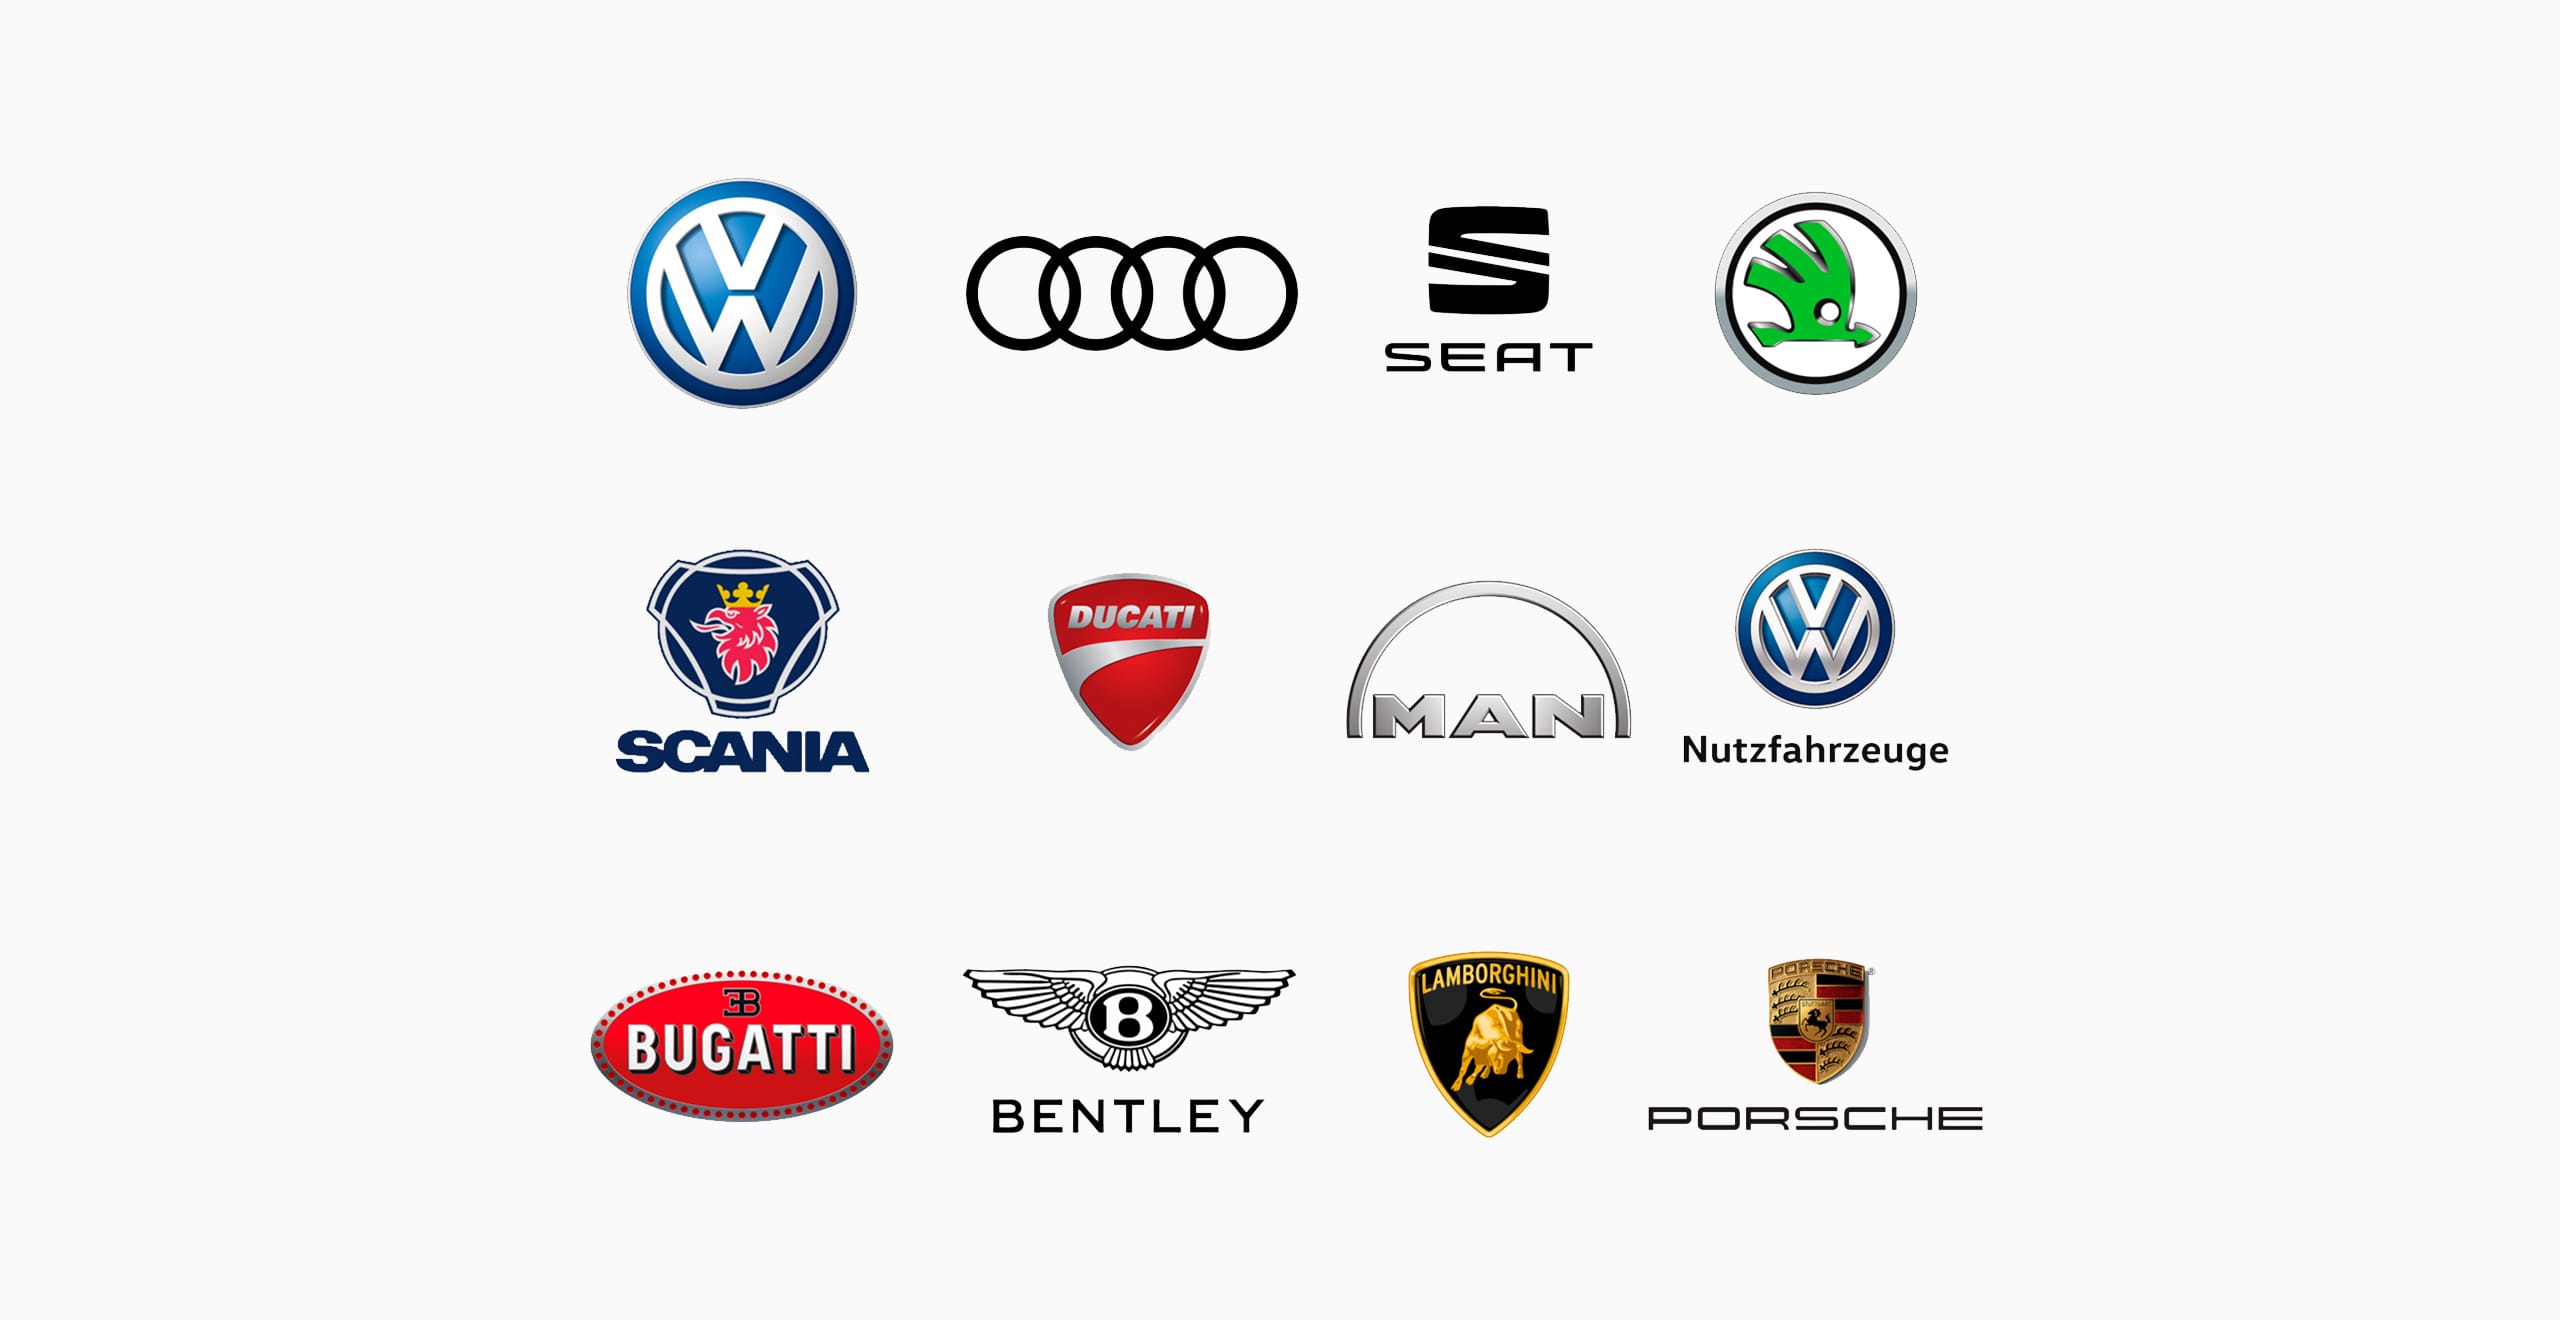 Karjäärivõimalusi pakkuvate Volkswageni kontserni ettevõtete logod – SEAT tööandjana